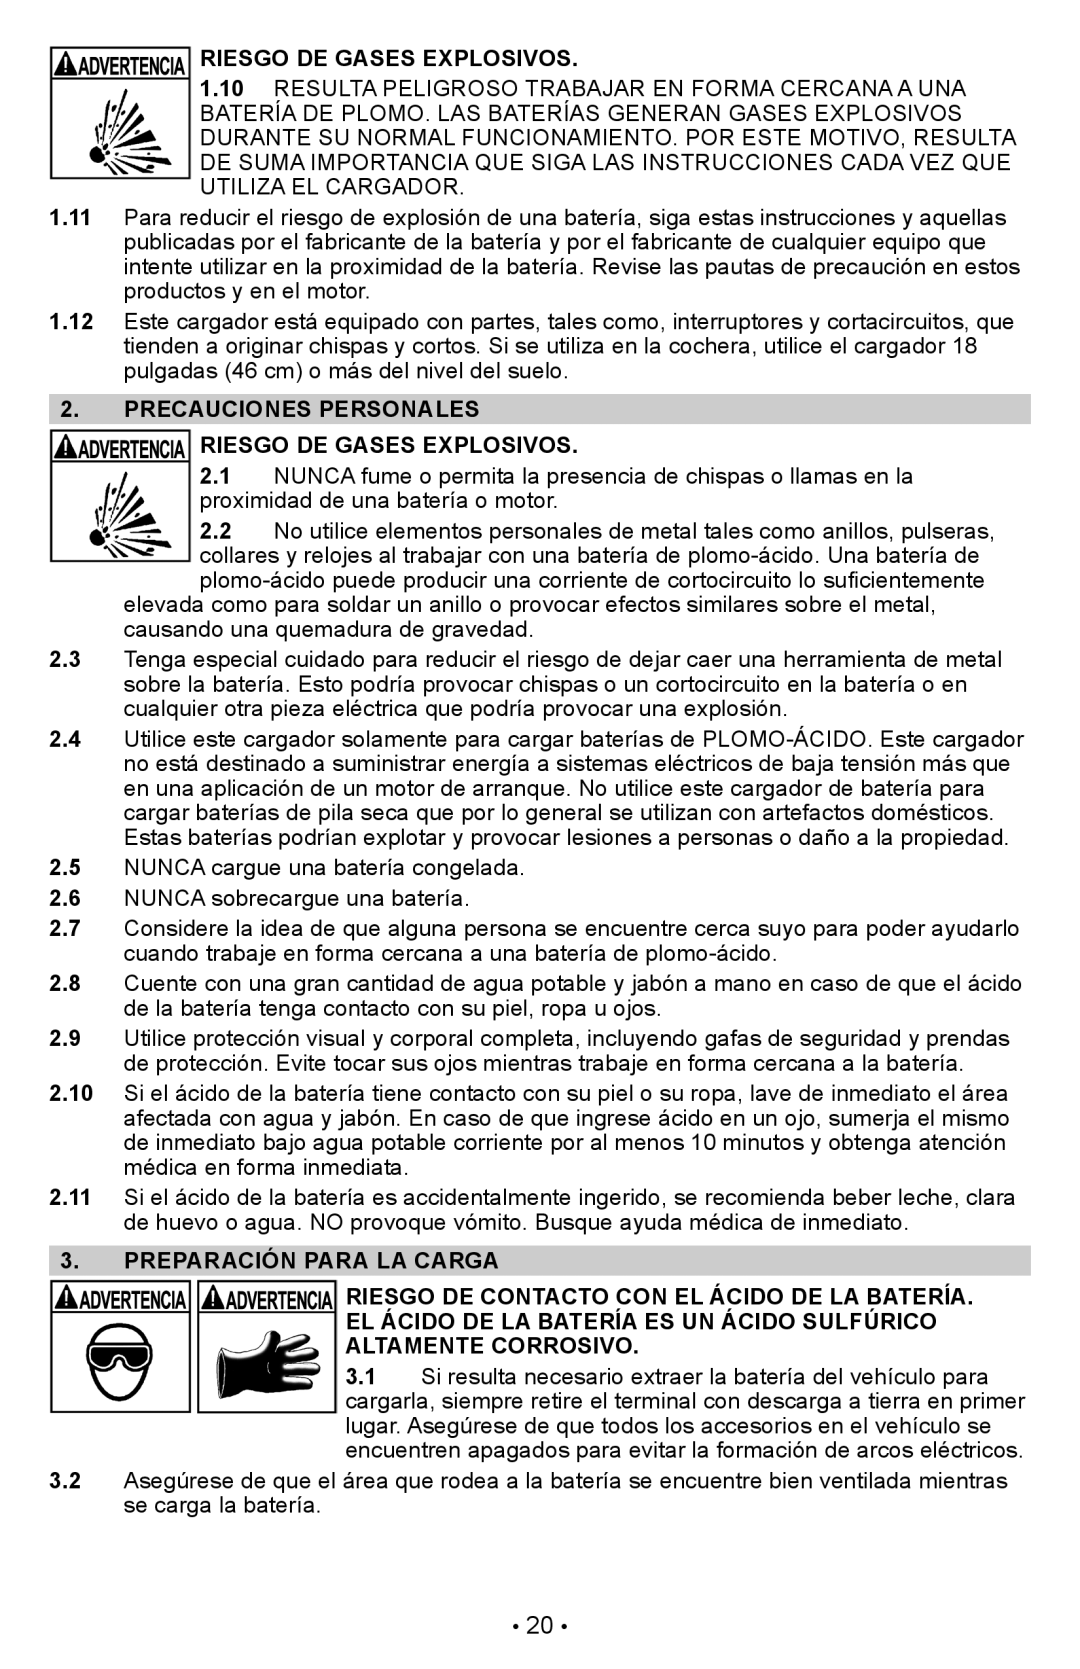 Schumacher PSW-22 owner manual Precauciones Personales Riesgo De Gases Explosivos, Preparación Para La Carga 